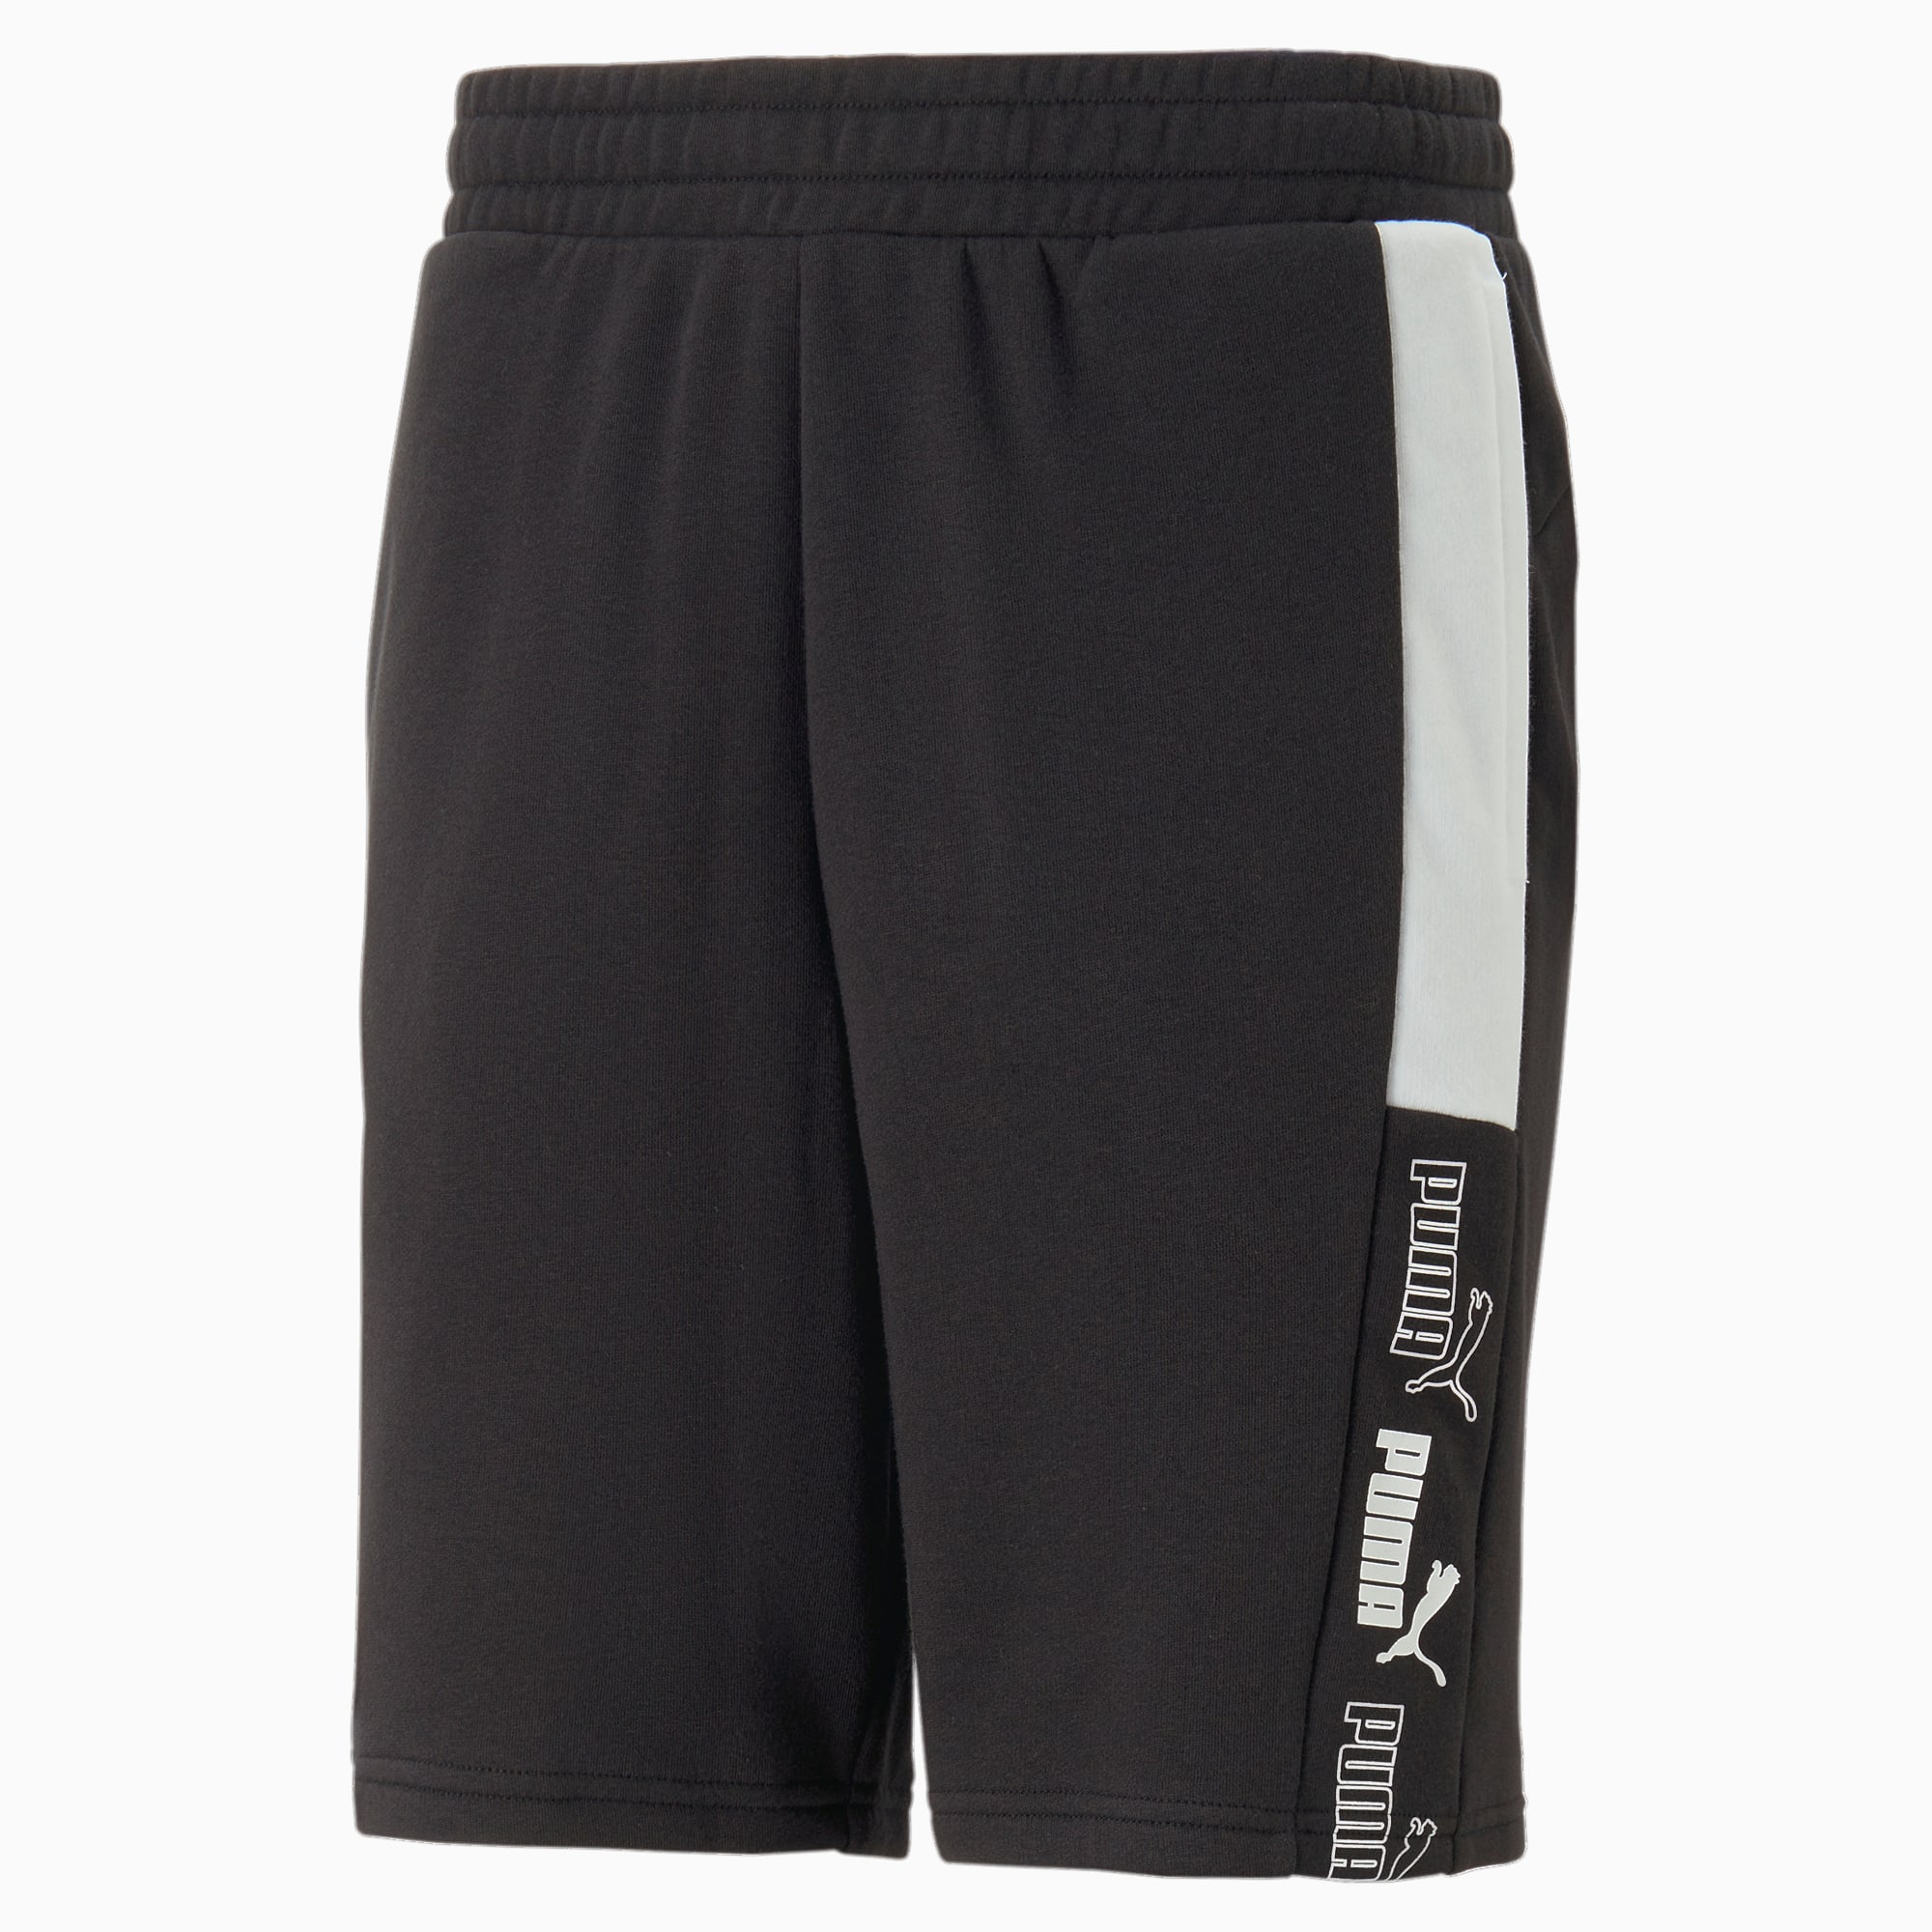 PUMA Block 9 Ft Shorts Men, Black/White, Size L, Clothing